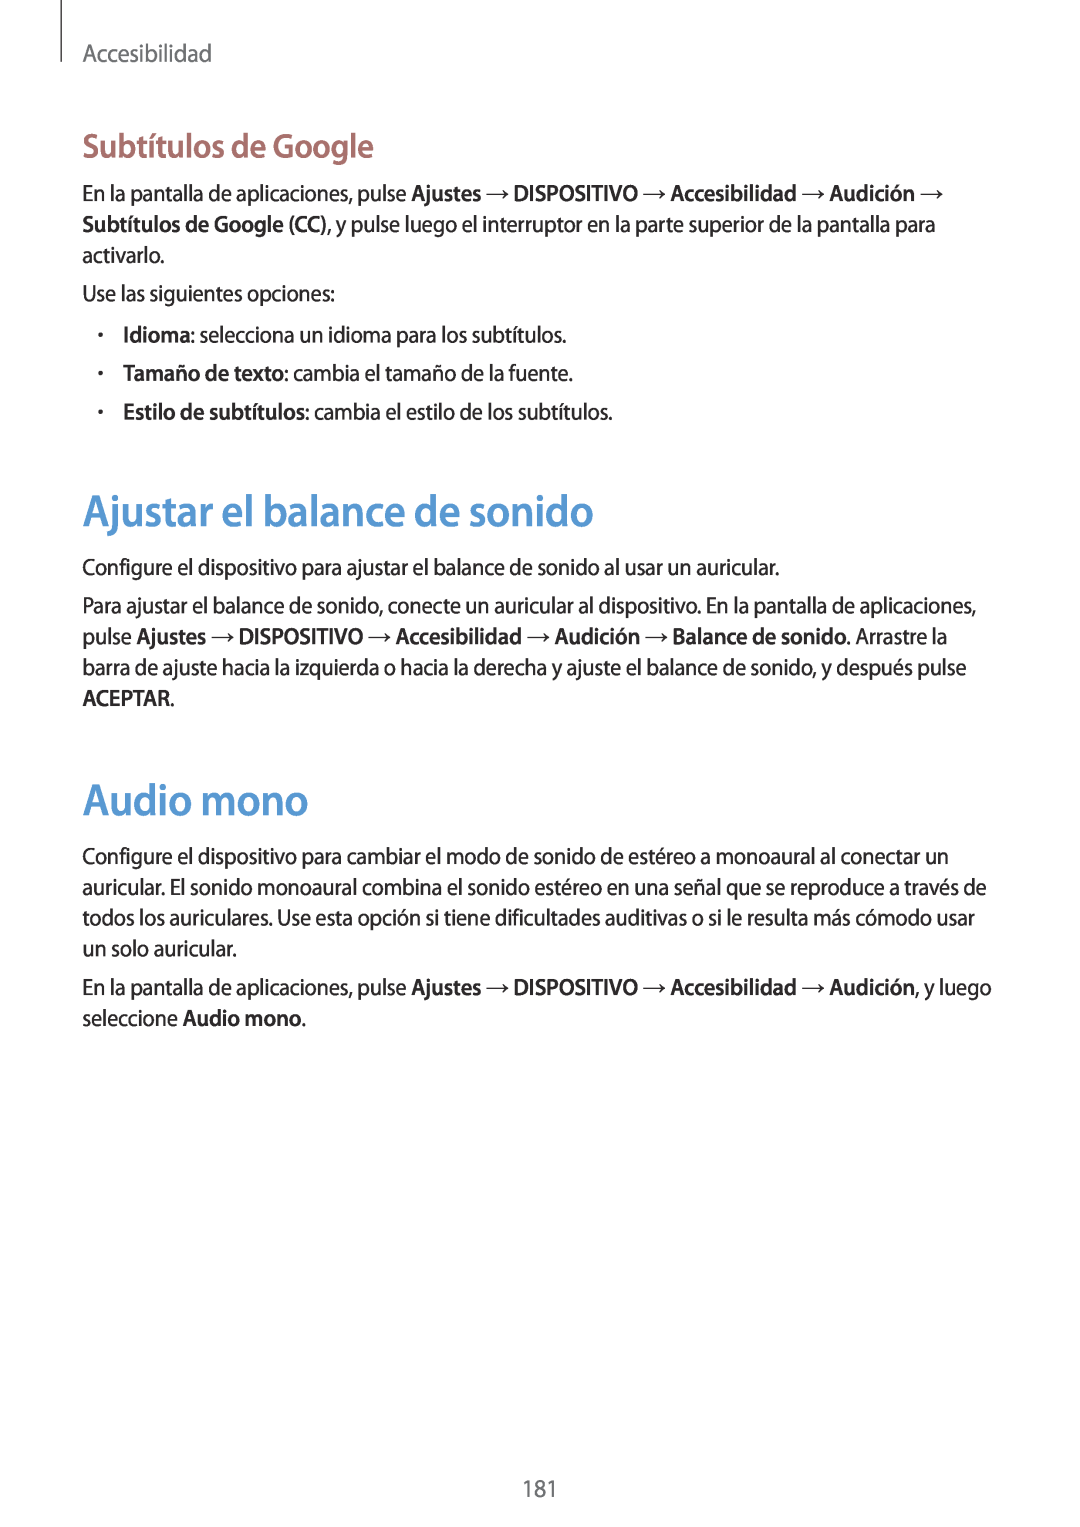 Samsung SM-T700NTSATGY manual Ajustar el balance de sonido, Audio mono, Subtítulos de Google, Aceptar, Accesibilidad 